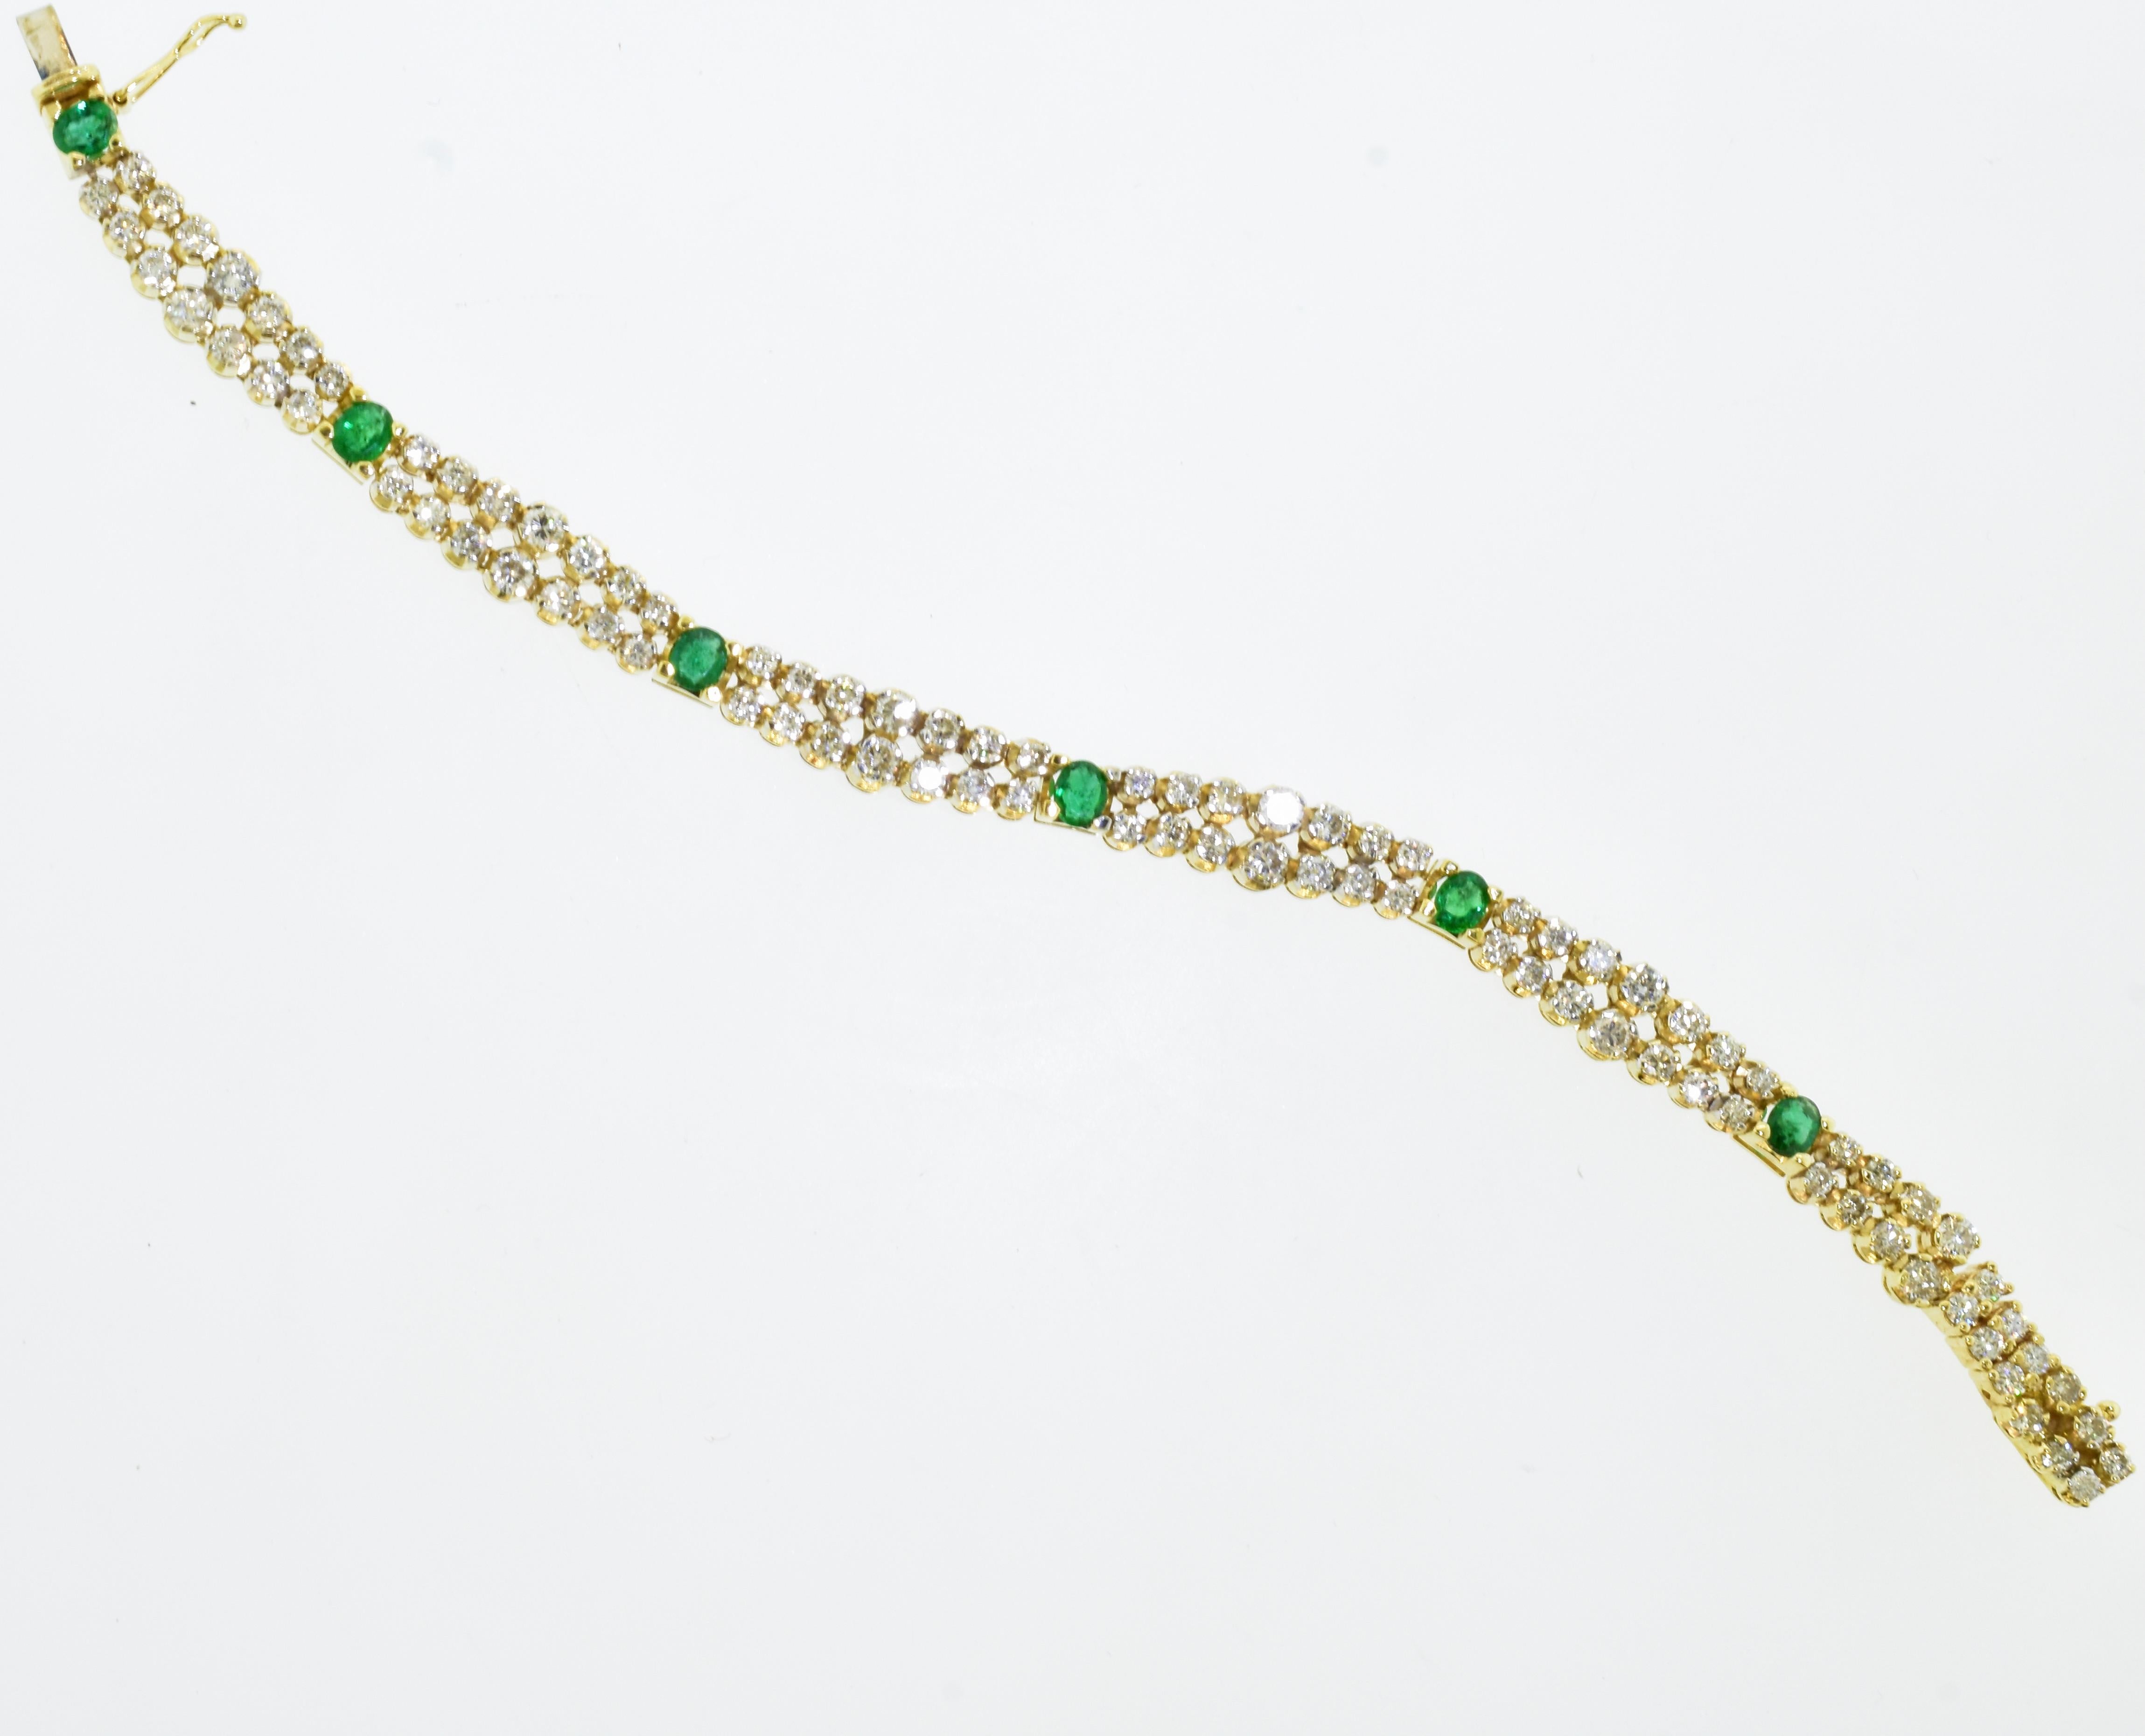 Brilliant Cut Diamond and Emerald Bracelet